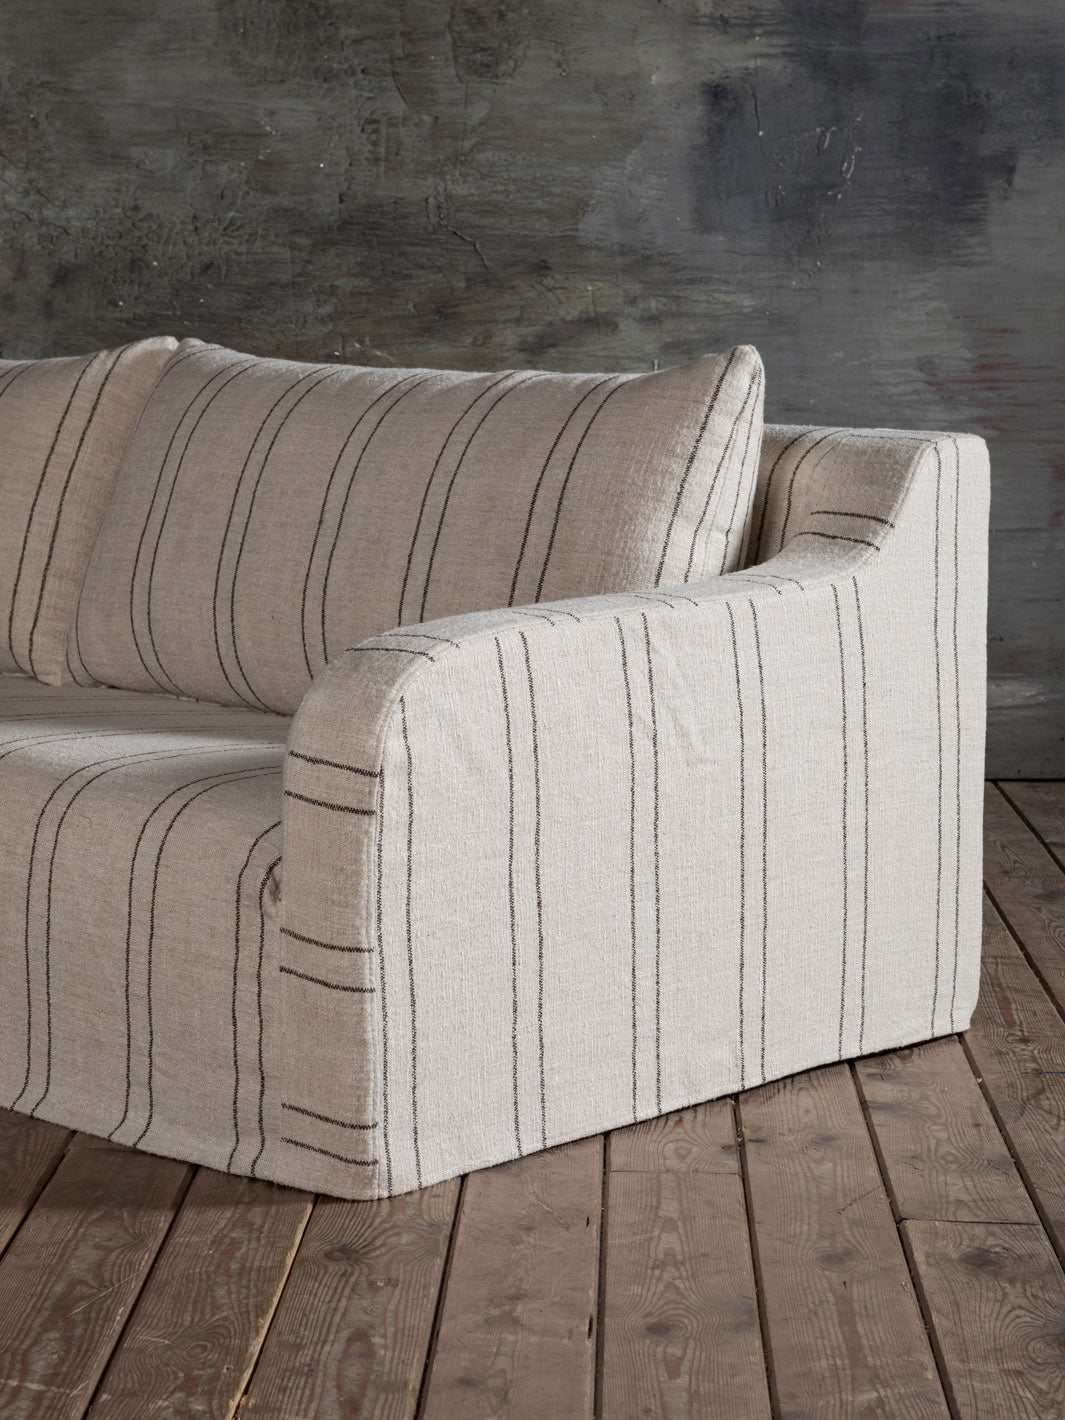 Striped Comporta sofa